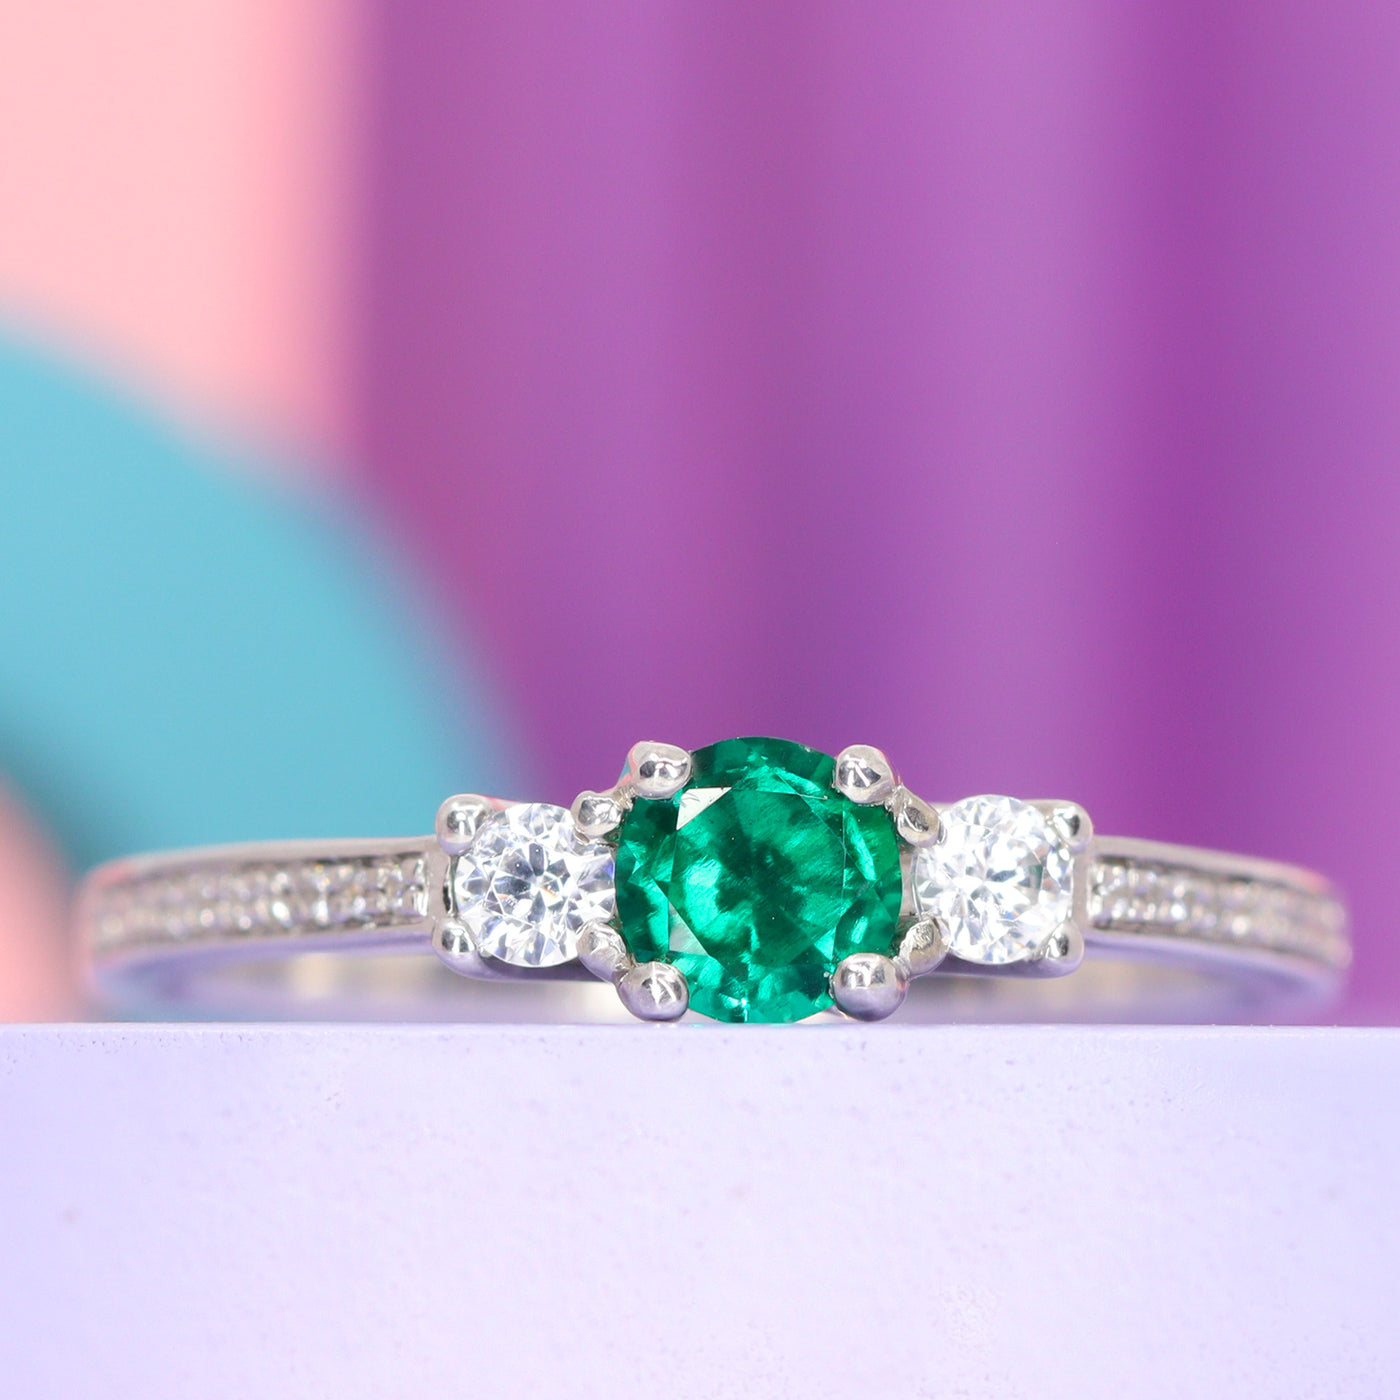 Vintage Style 4.93 TW Emerald Cut Unique Moissanite Engagement Ring